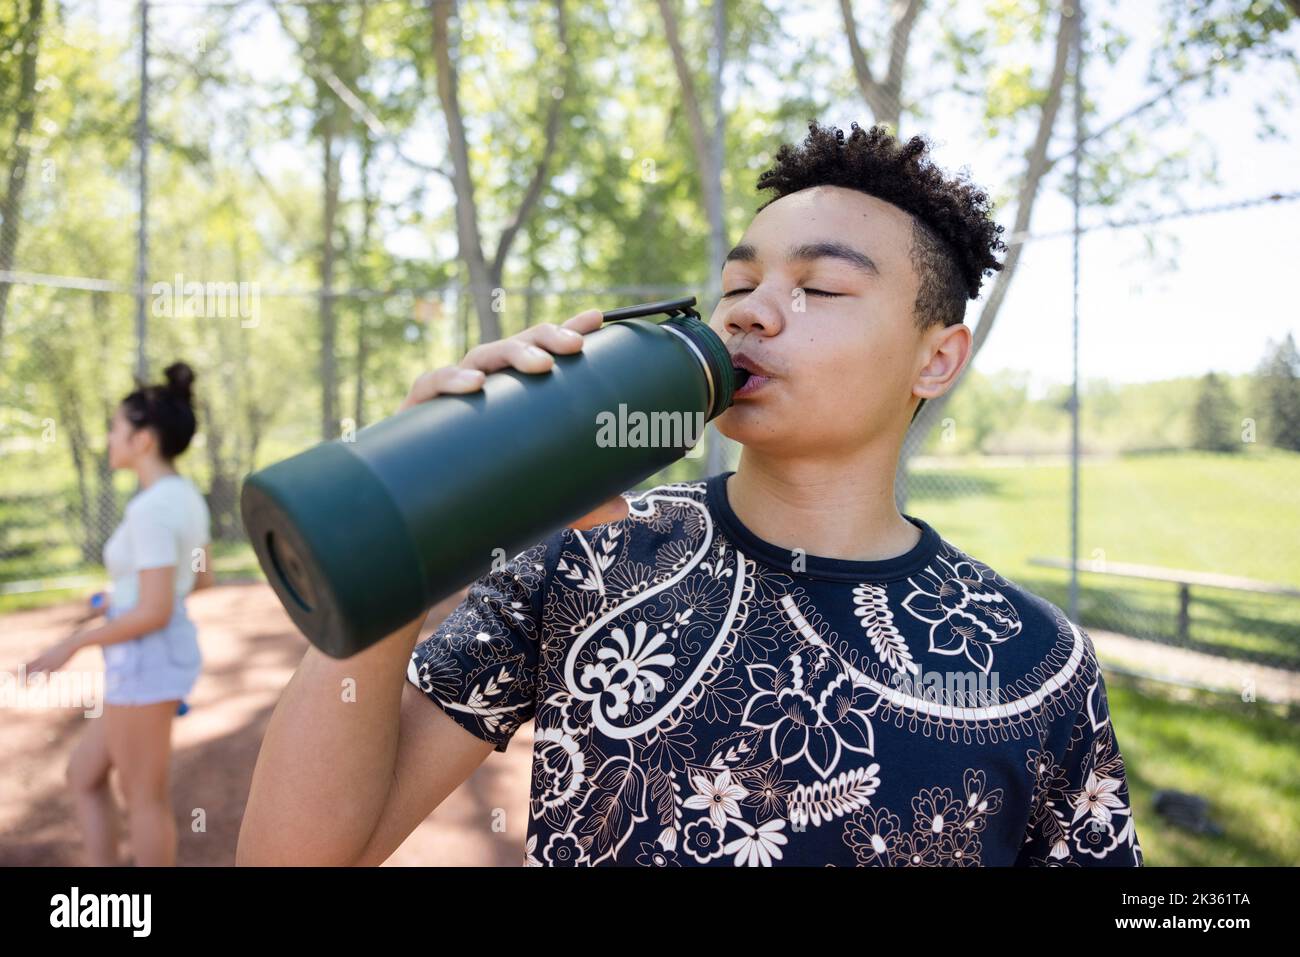 https://c8.alamy.com/comp/2K361TA/boy-enjoying-drink-from-water-bottle-in-baseball-field-2K361TA.jpg